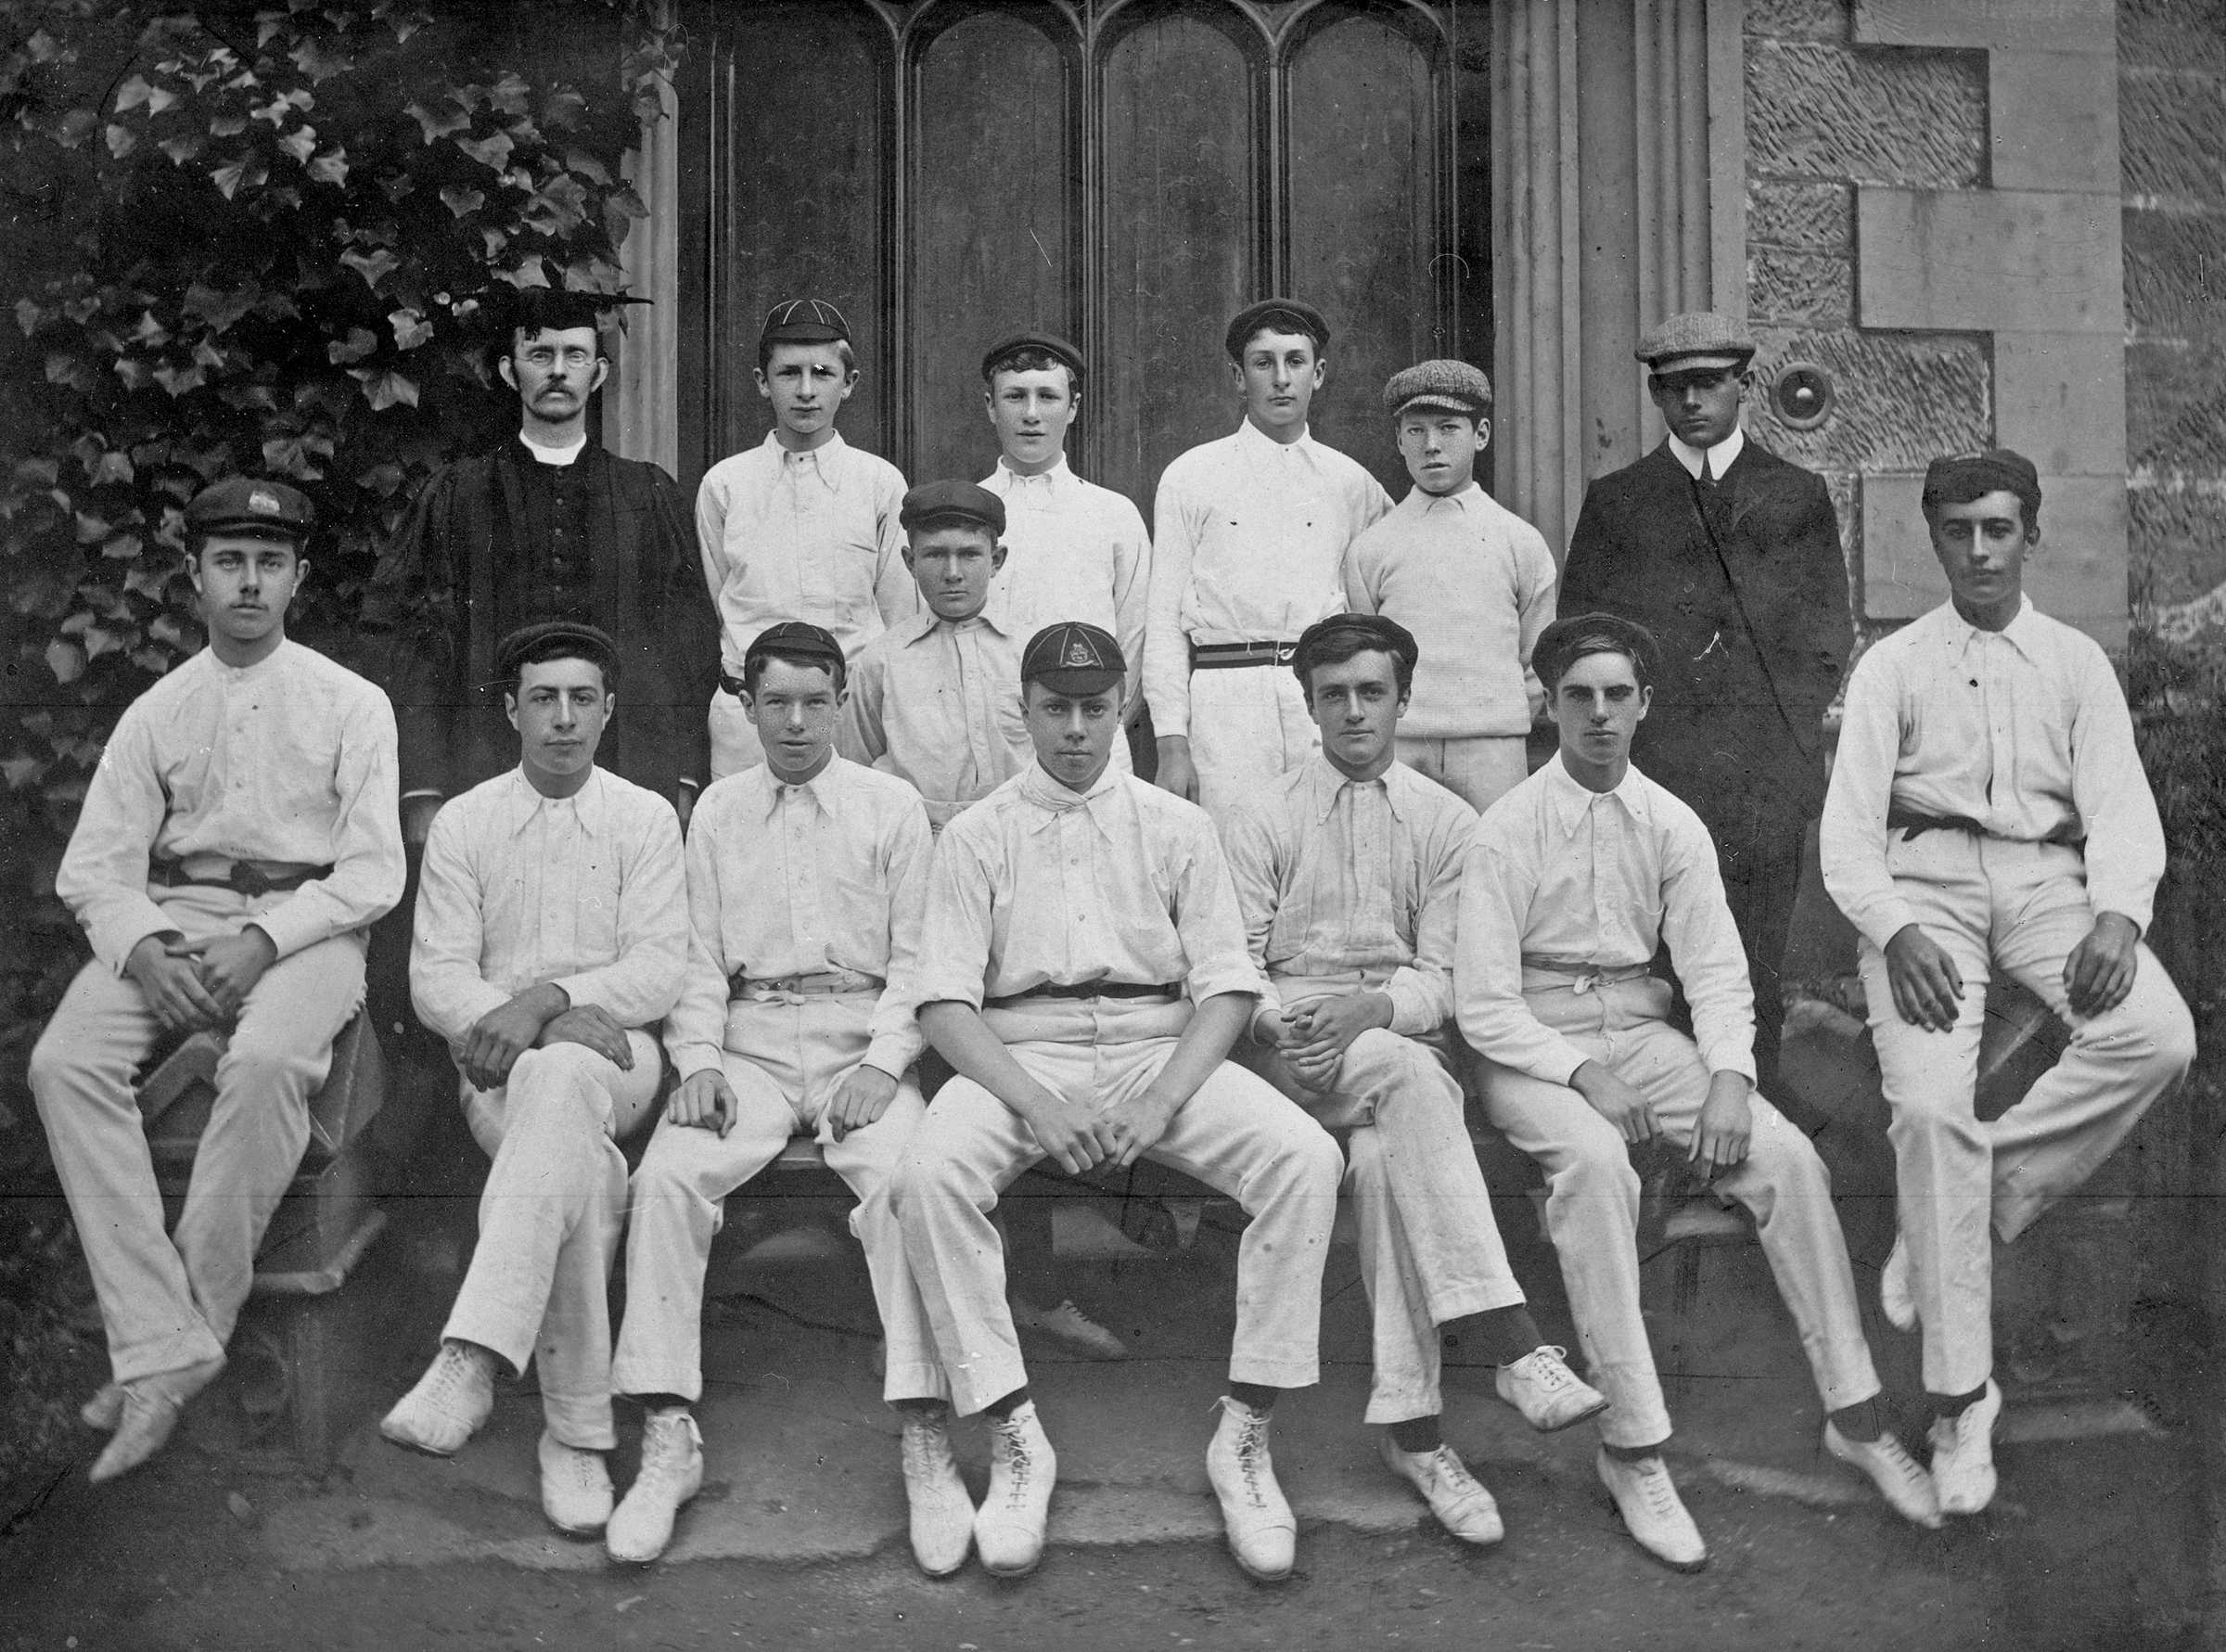 Cricket team with Rev H H Anderson, Season 1903/4.